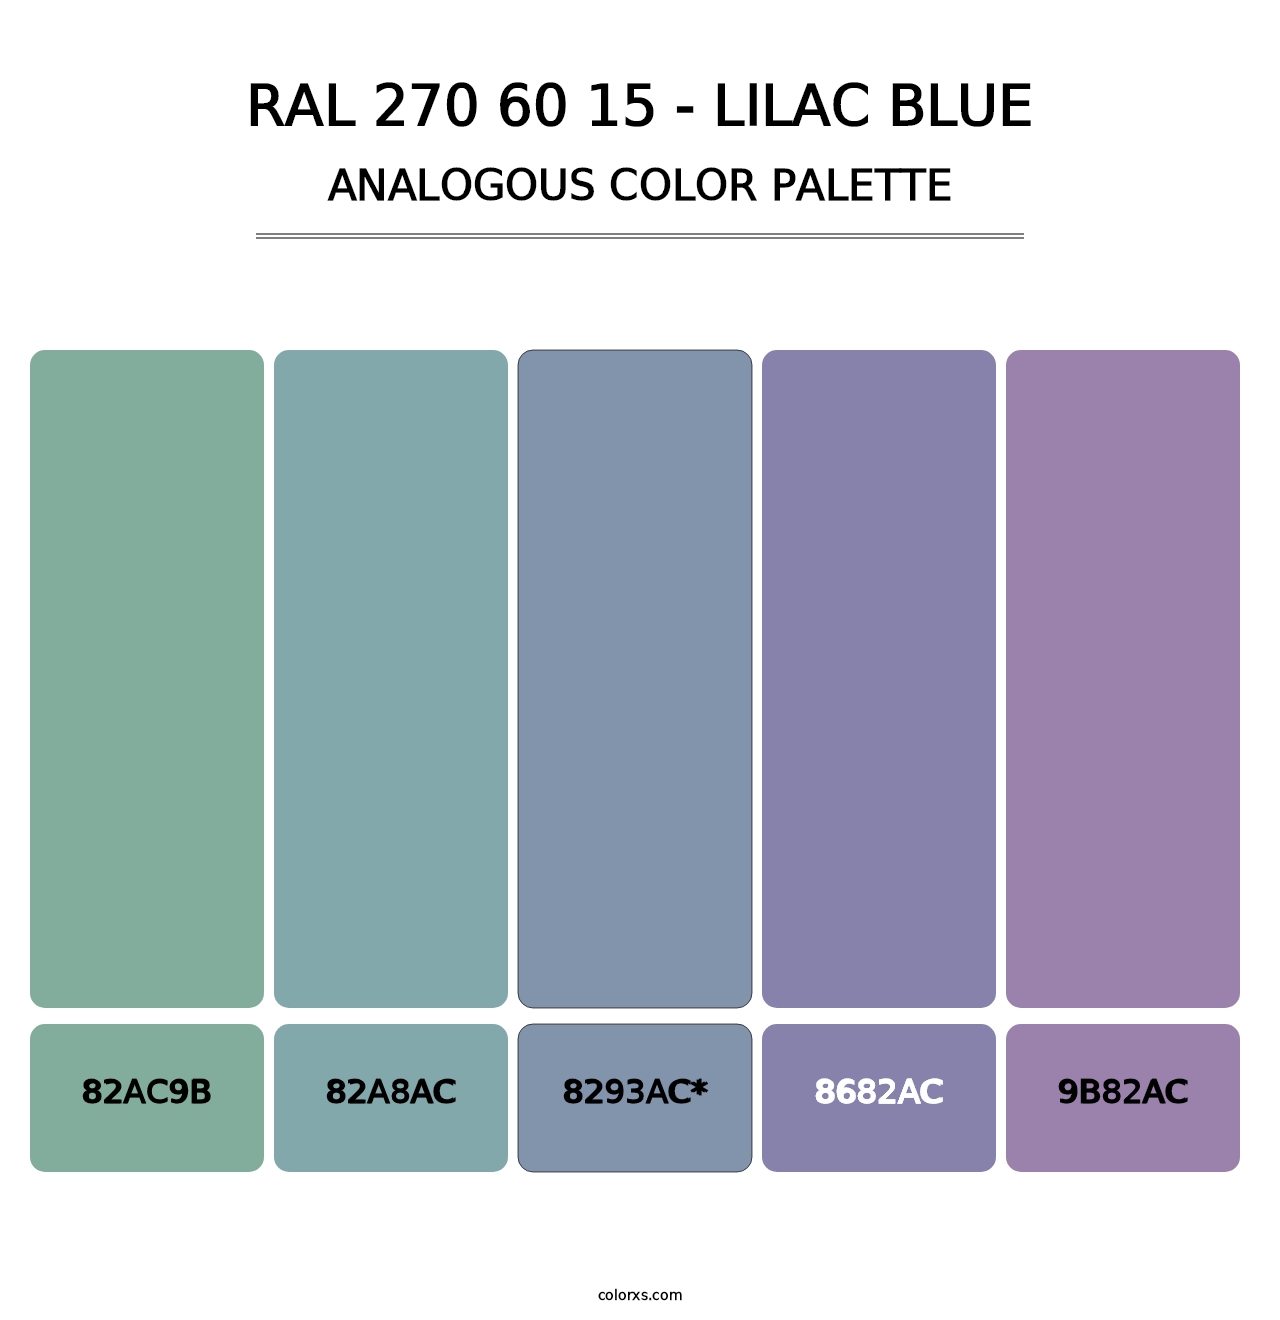 RAL 270 60 15 - Lilac Blue - Analogous Color Palette